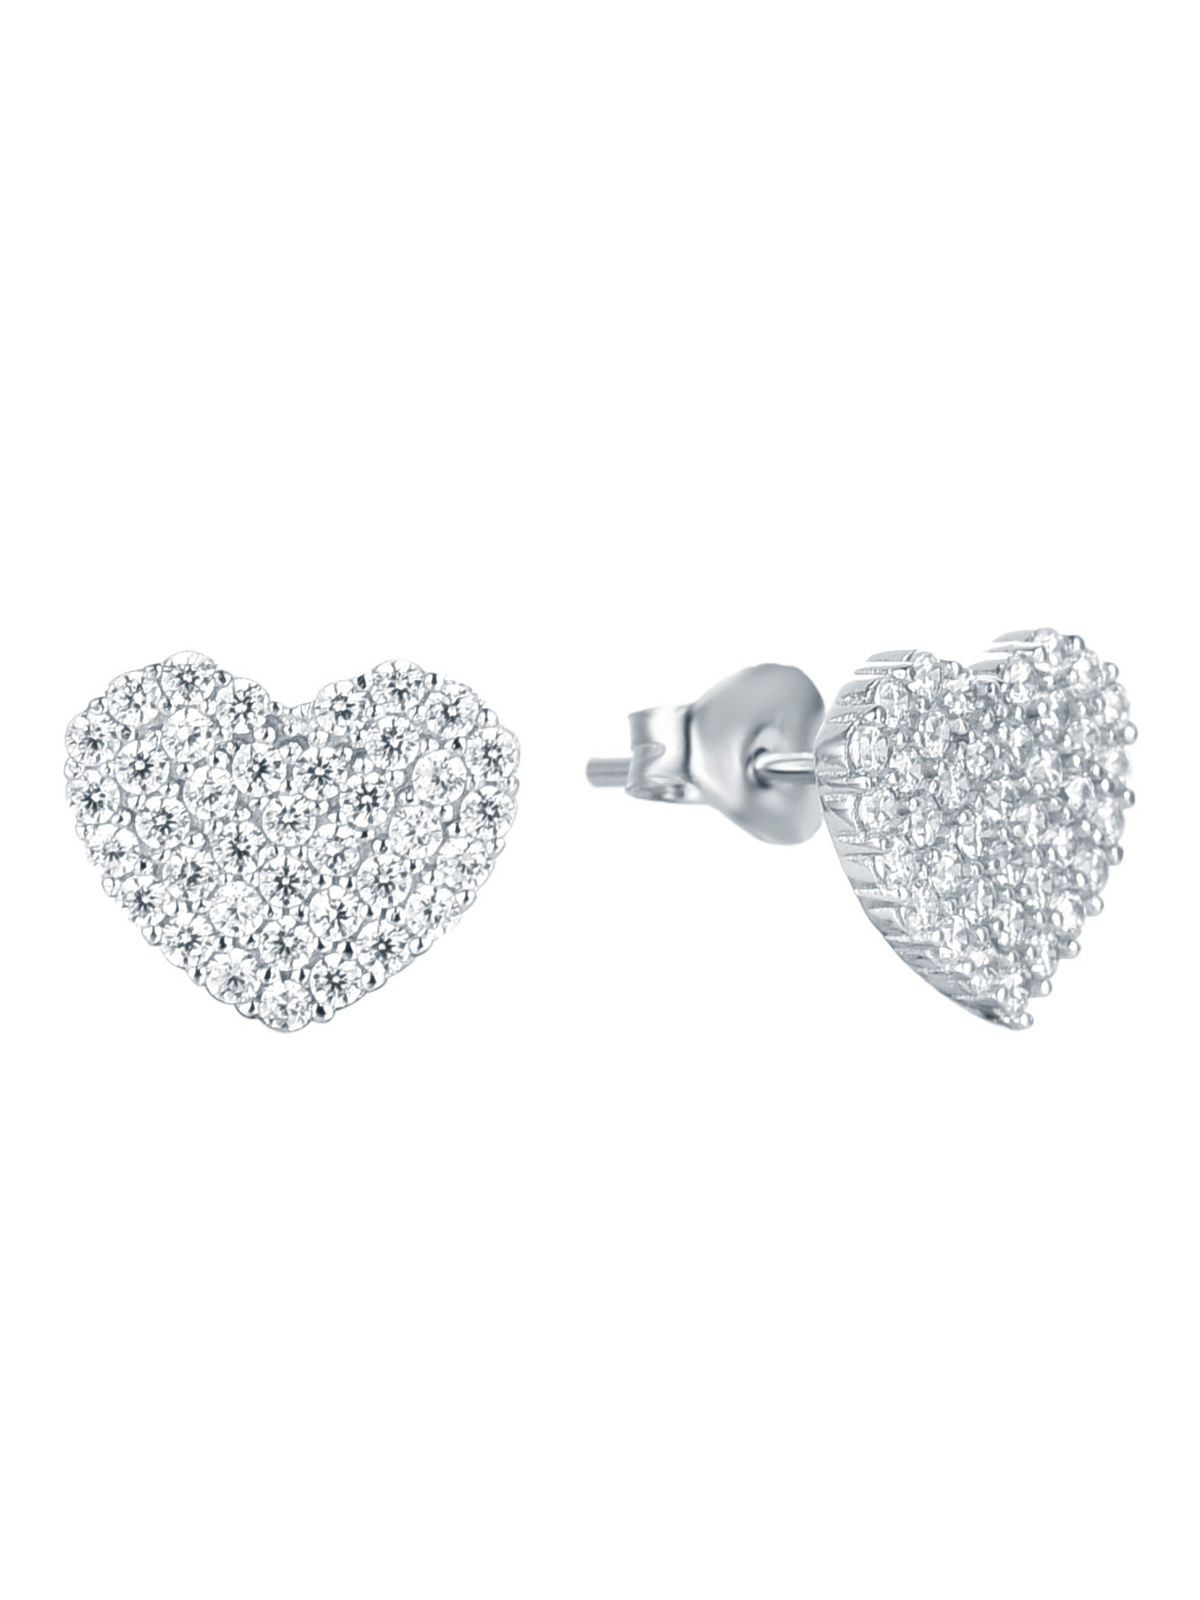 American Diamond 925 Silver Heart Stud Earring